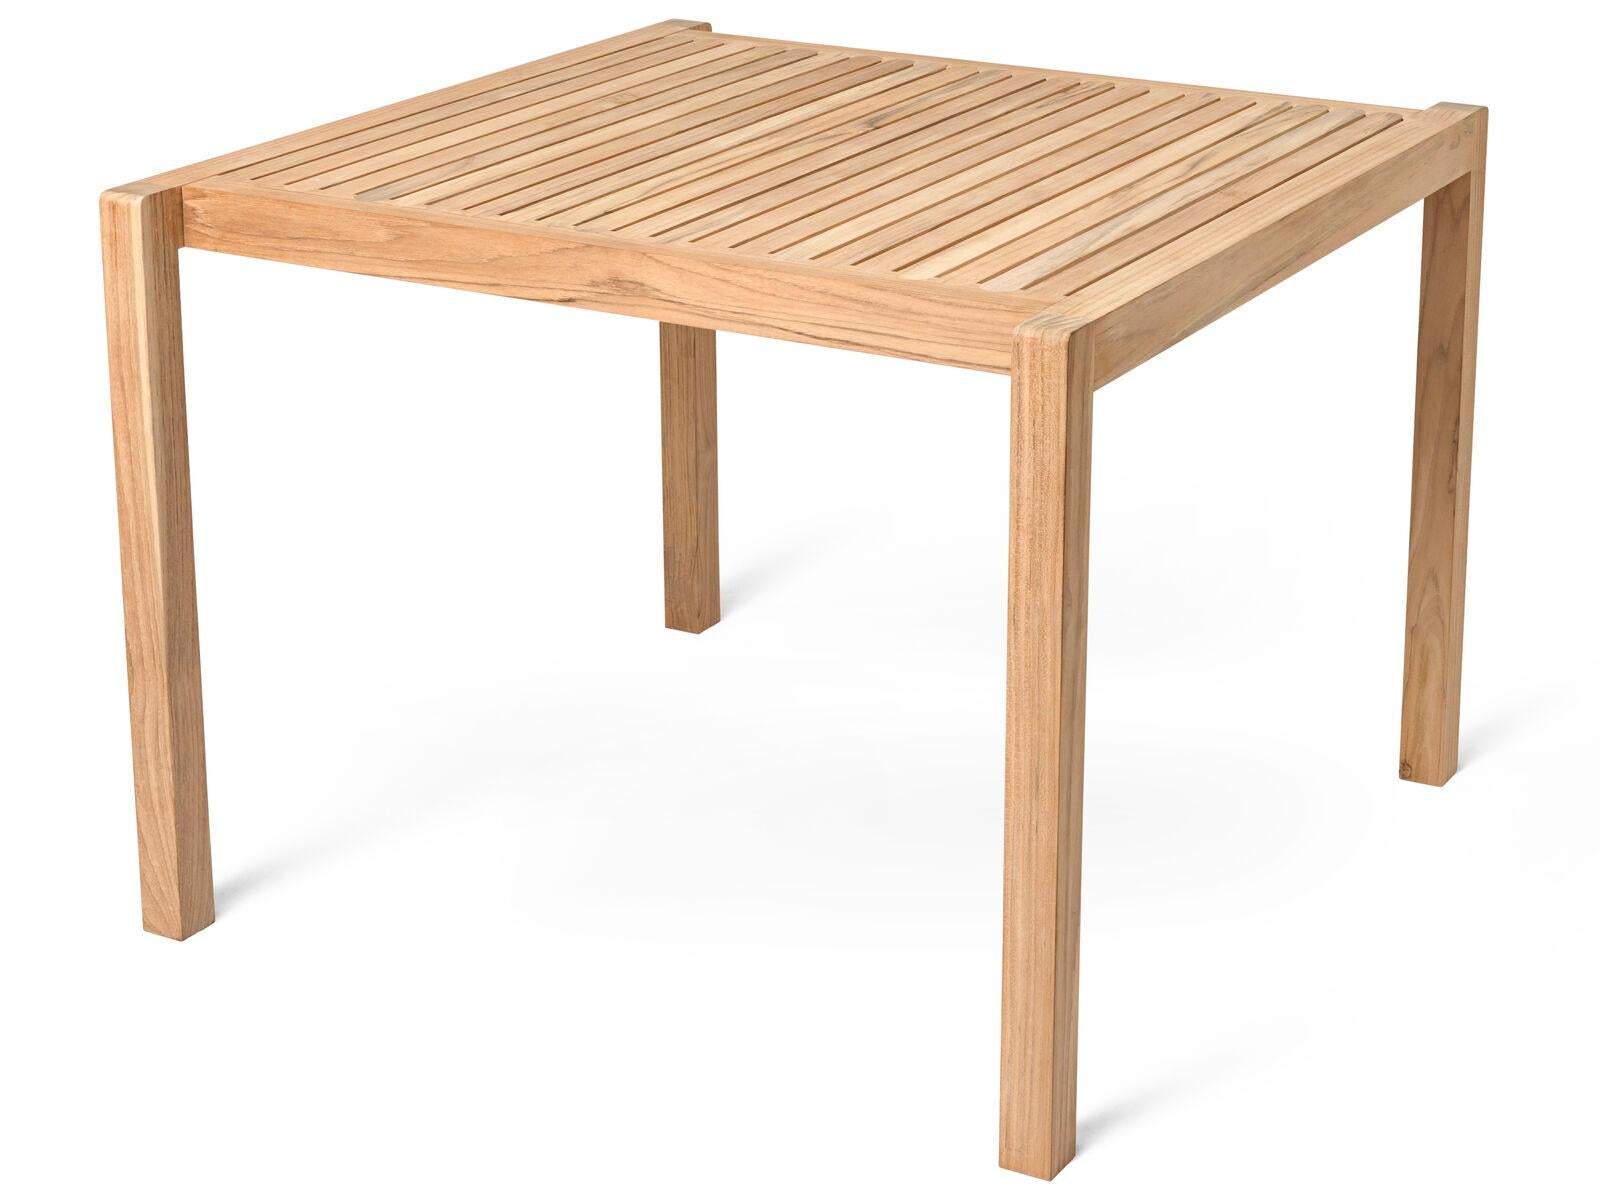 Der schlichte, quadratische Esstisch gehört zur Serie AH Outdoor, die von Alfred Homann 2022 entworfen wurde. Wie der Rest der Serie ist auch dieser Tisch von einer strengen Ästhetik geprägt, die elegant mit weichen, abgerundeten Details kombiniert